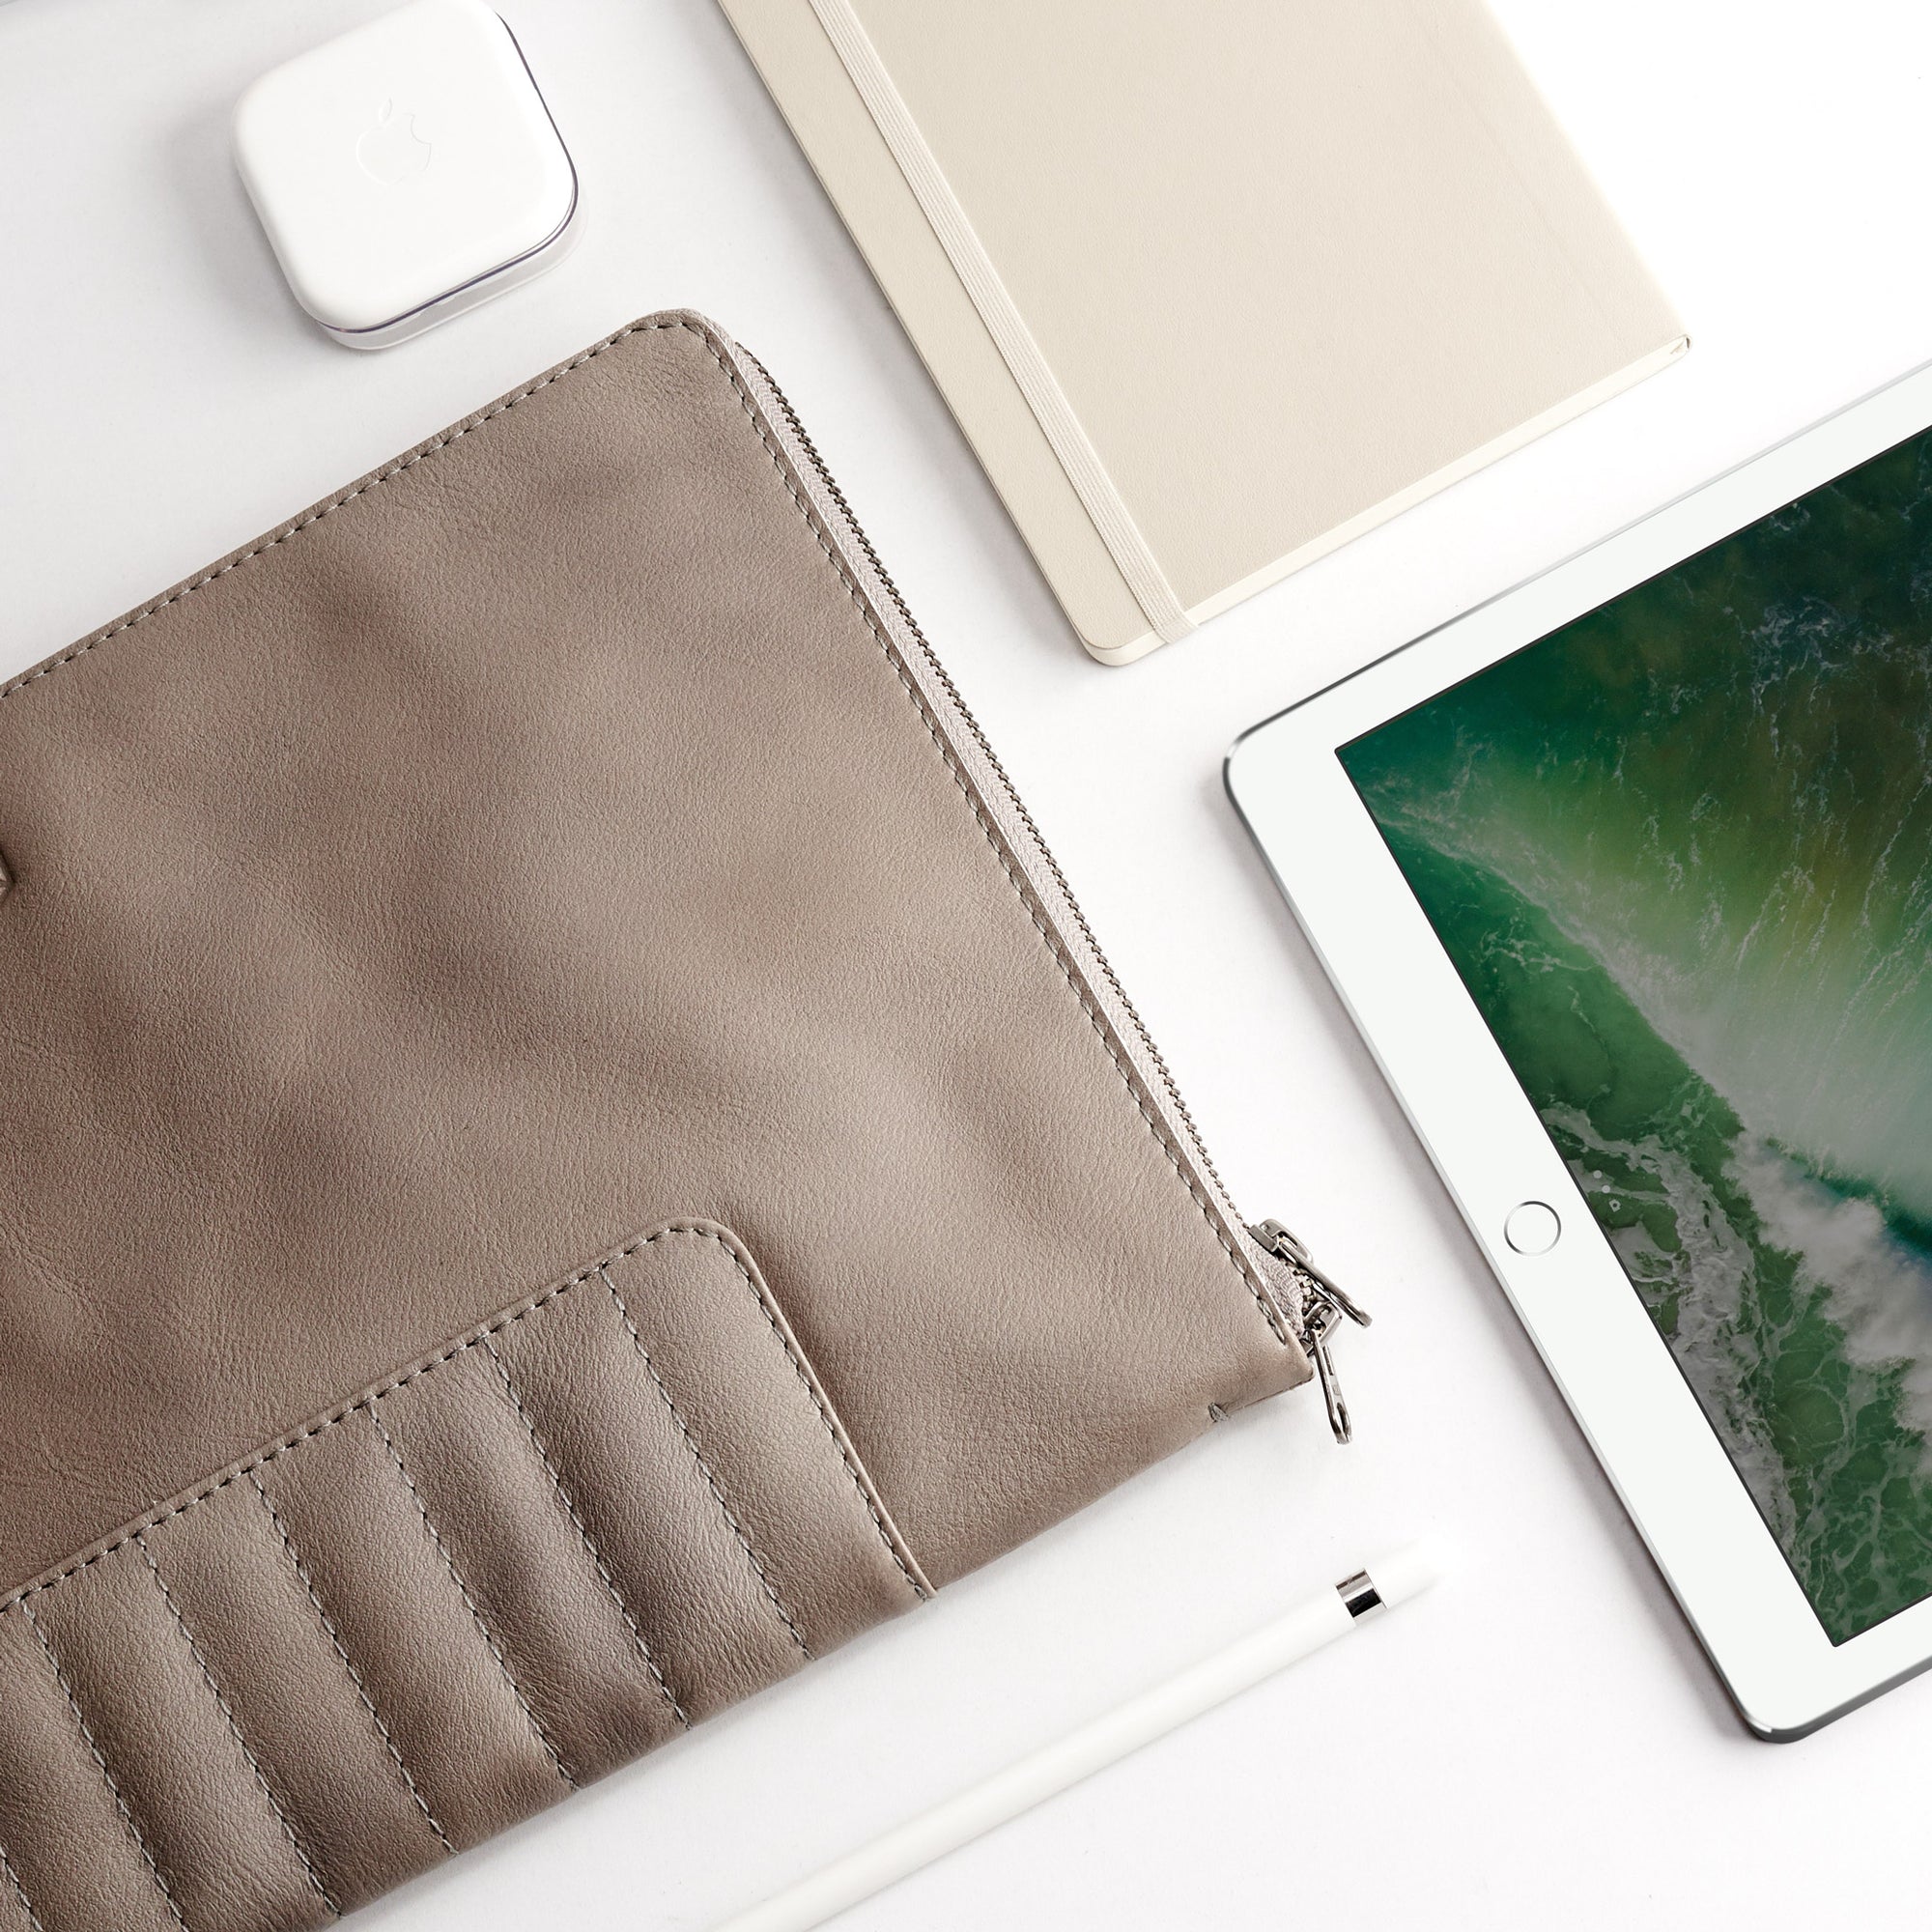 Apple accessories. Grey Leather Laptop Portfolio Case. Laptops & devices Bag.